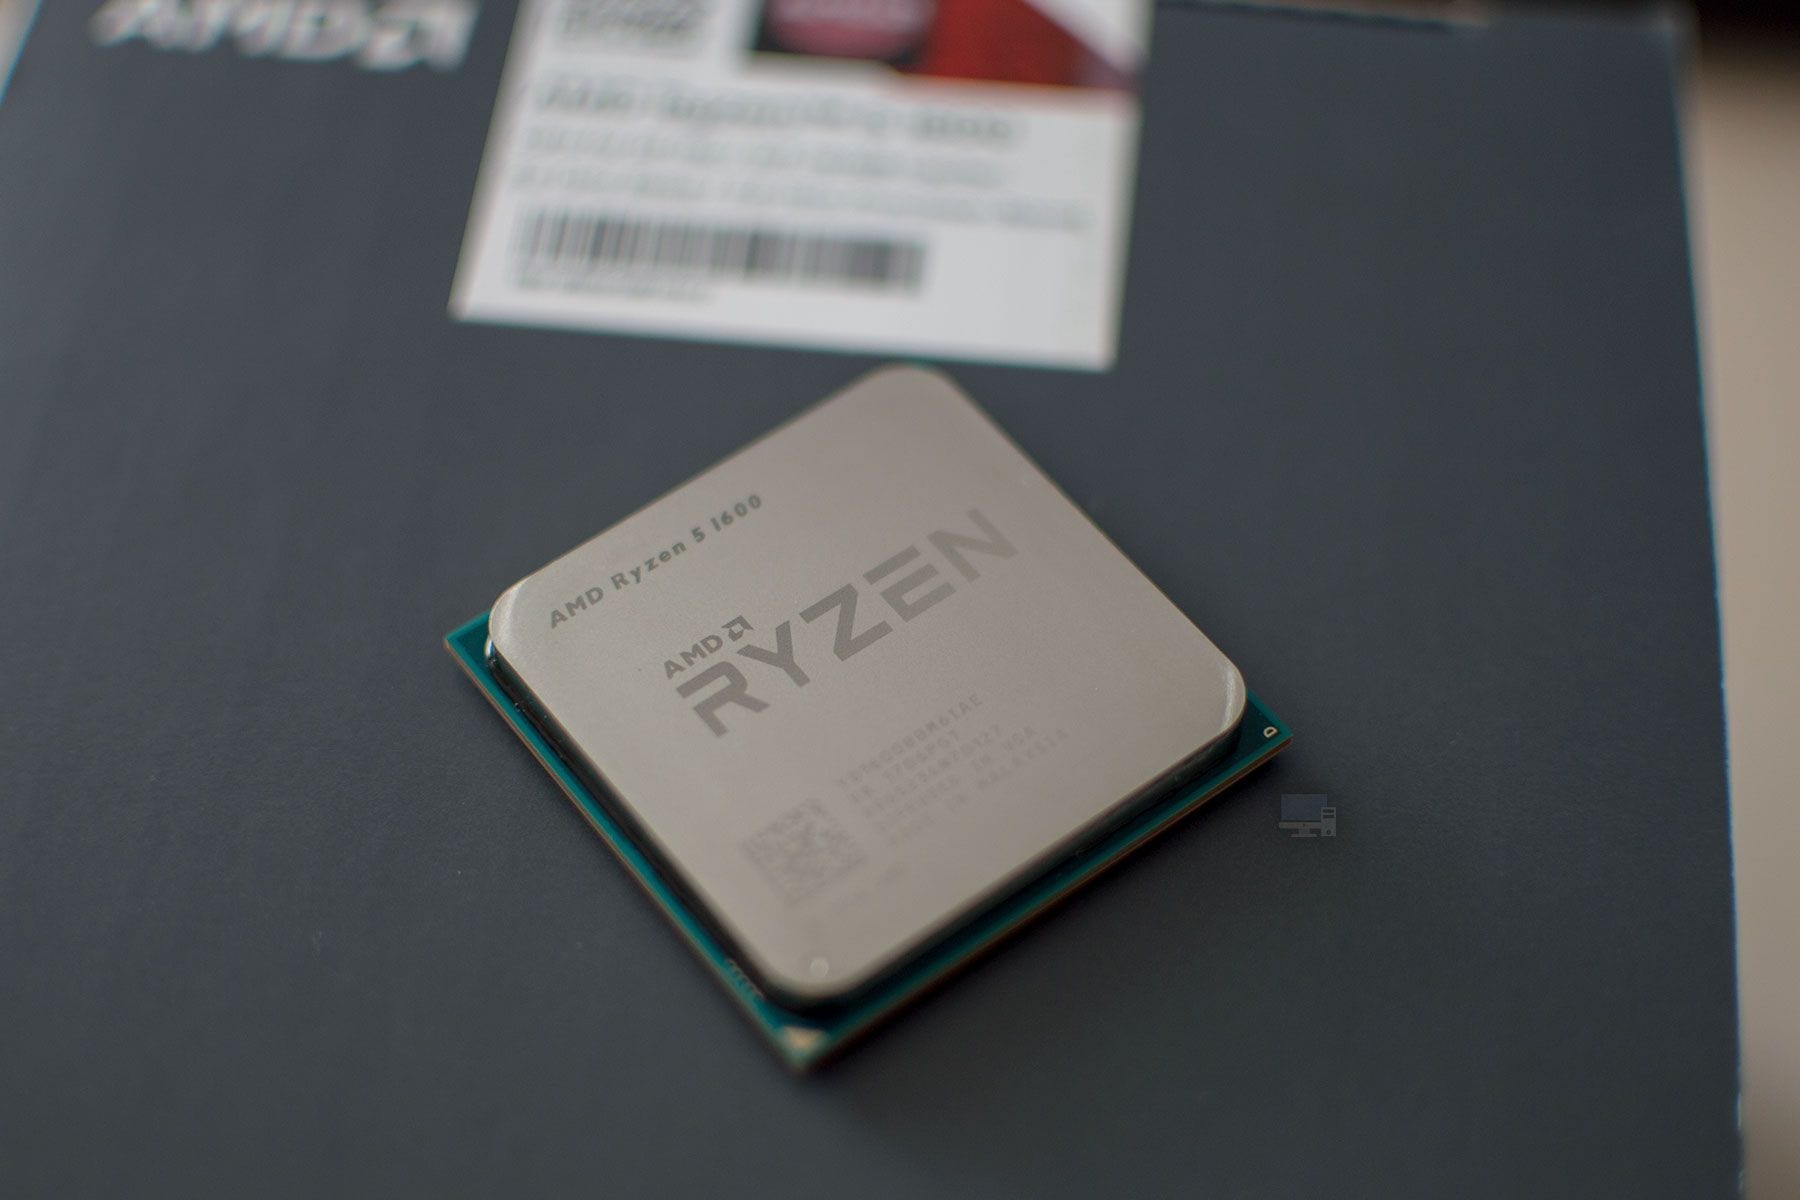 AMD R5 1600 Open